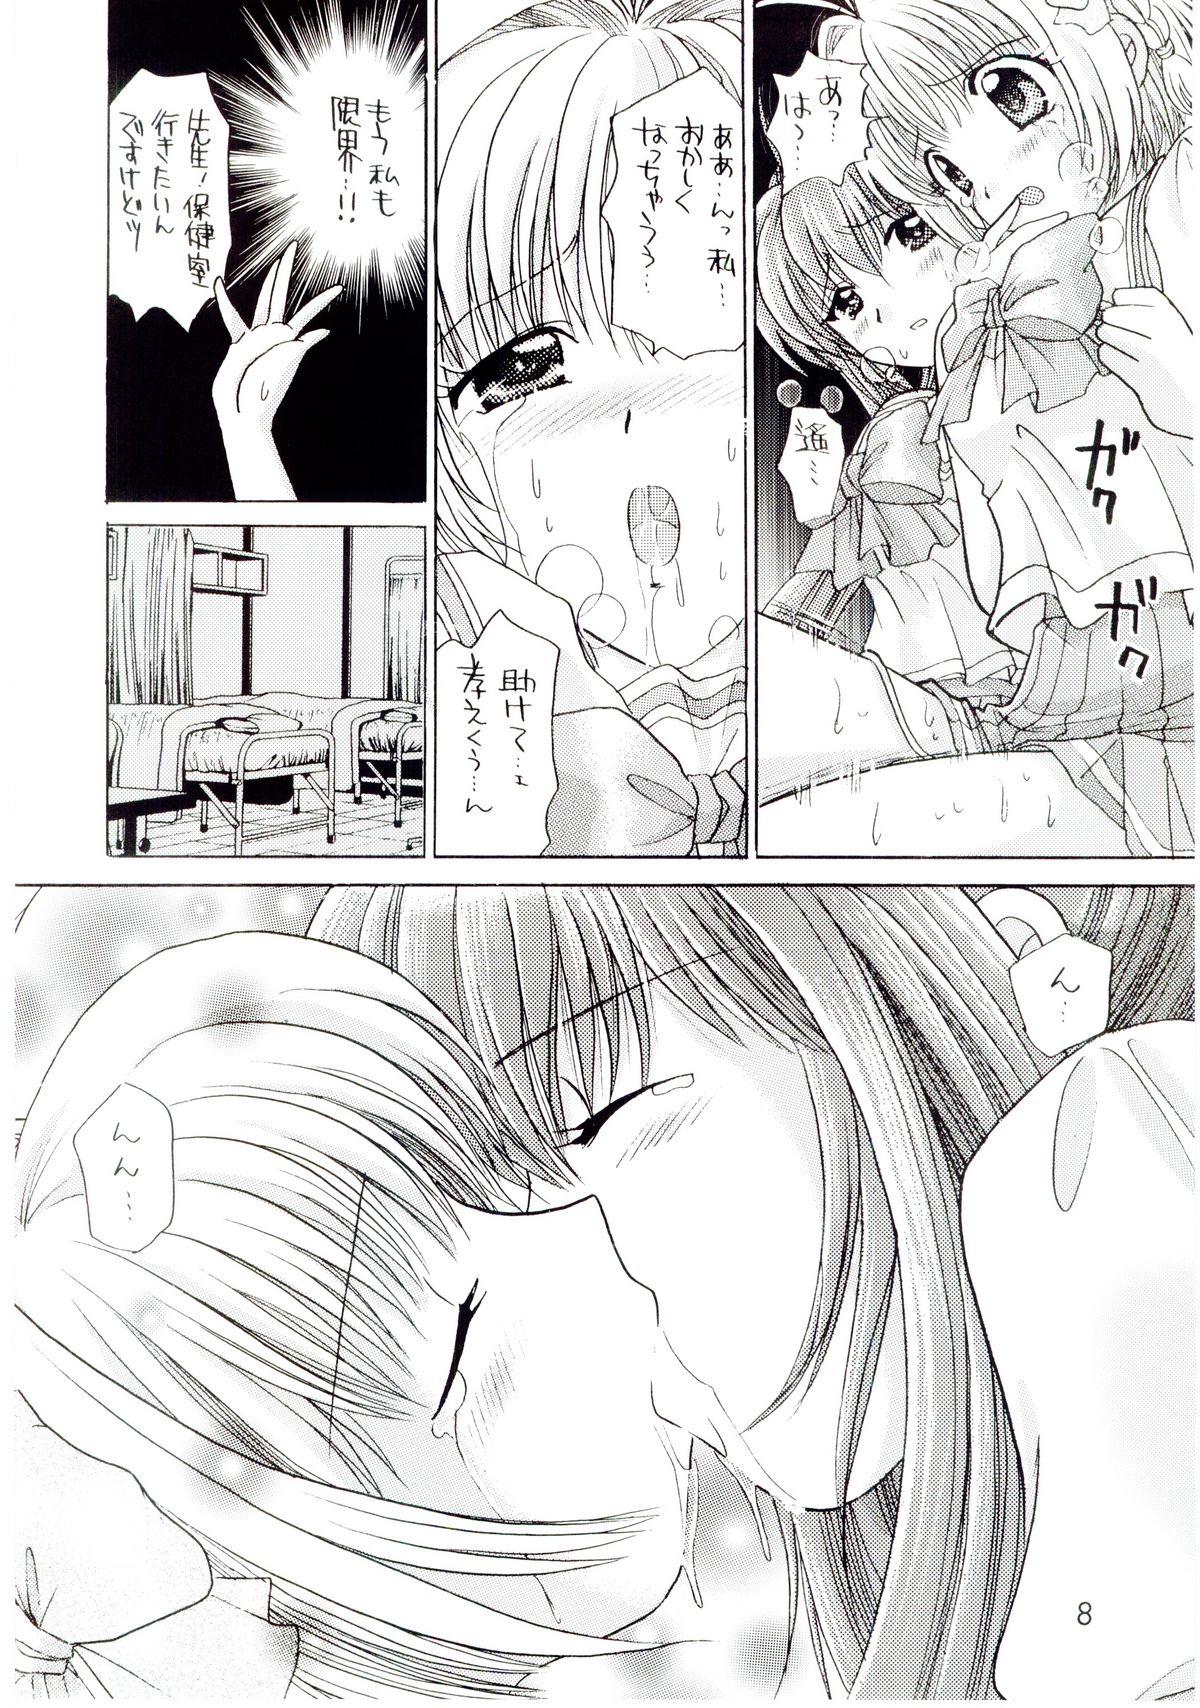 Cojiendo Kimi ga nozomu eien zettai zetsumei 2 - Kimi ga nozomu eien Erotic - Page 7